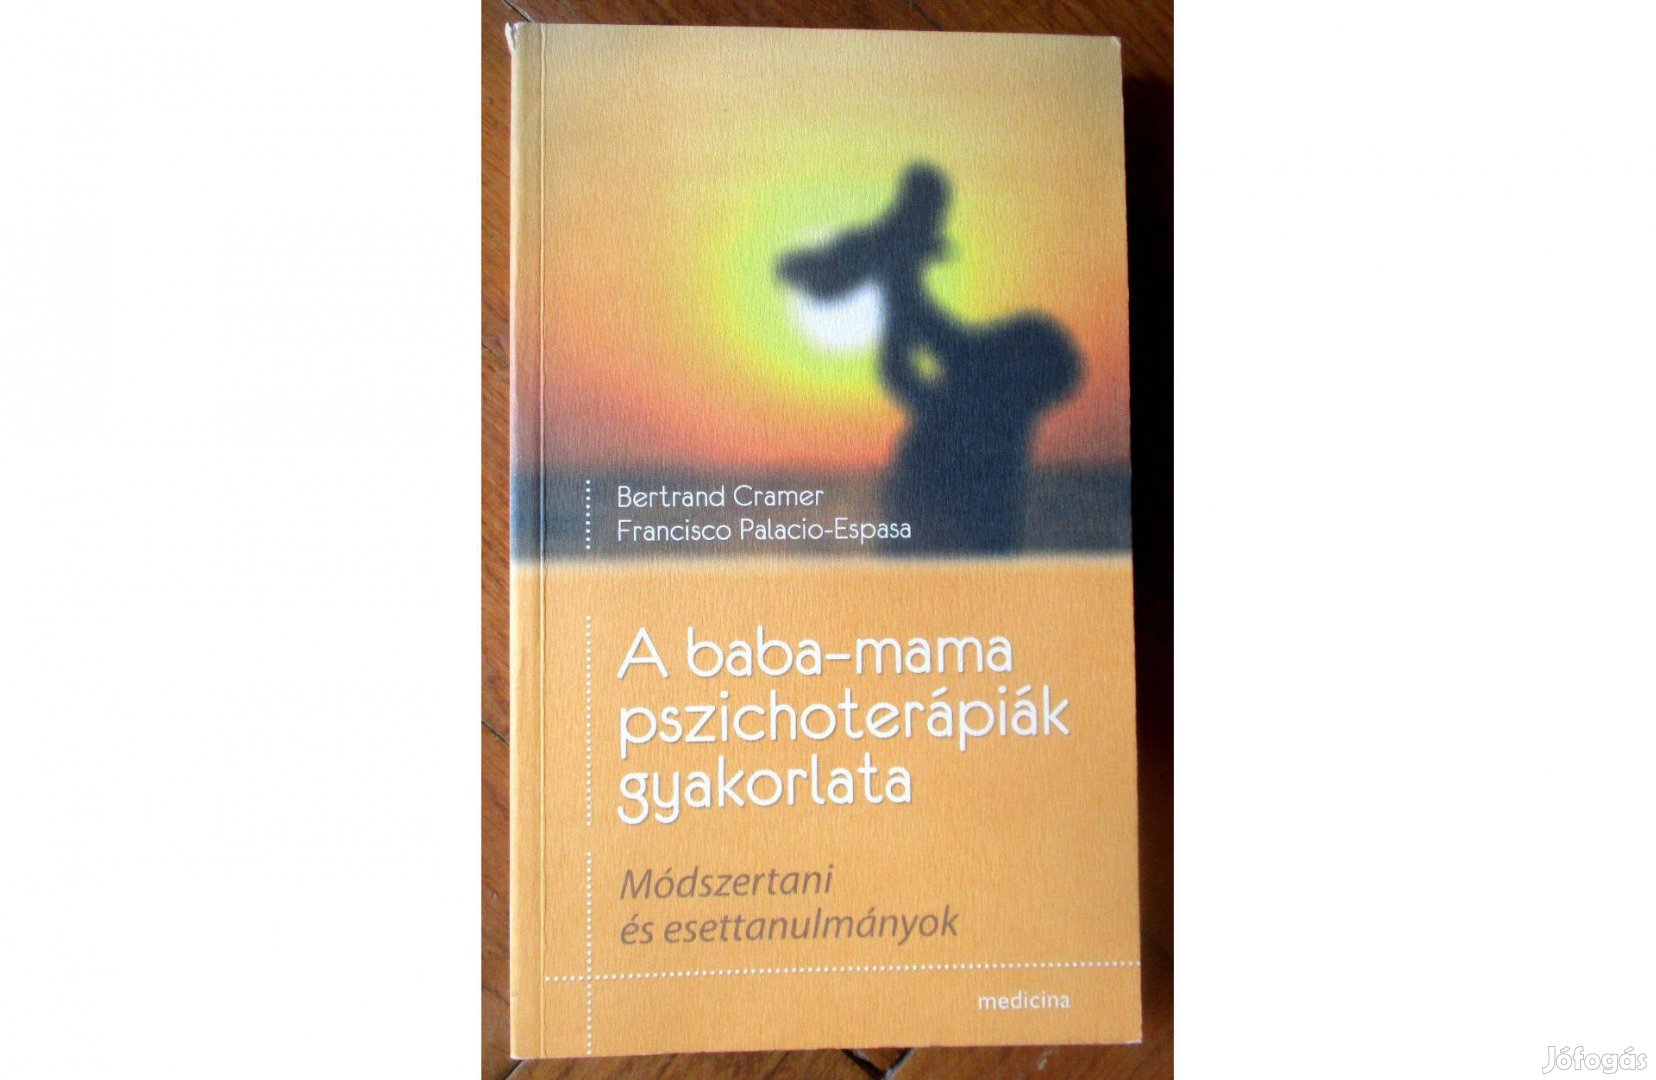 Cramer, Palacio-Espasa: A baba-mama pszichoterápiák gyakorlata